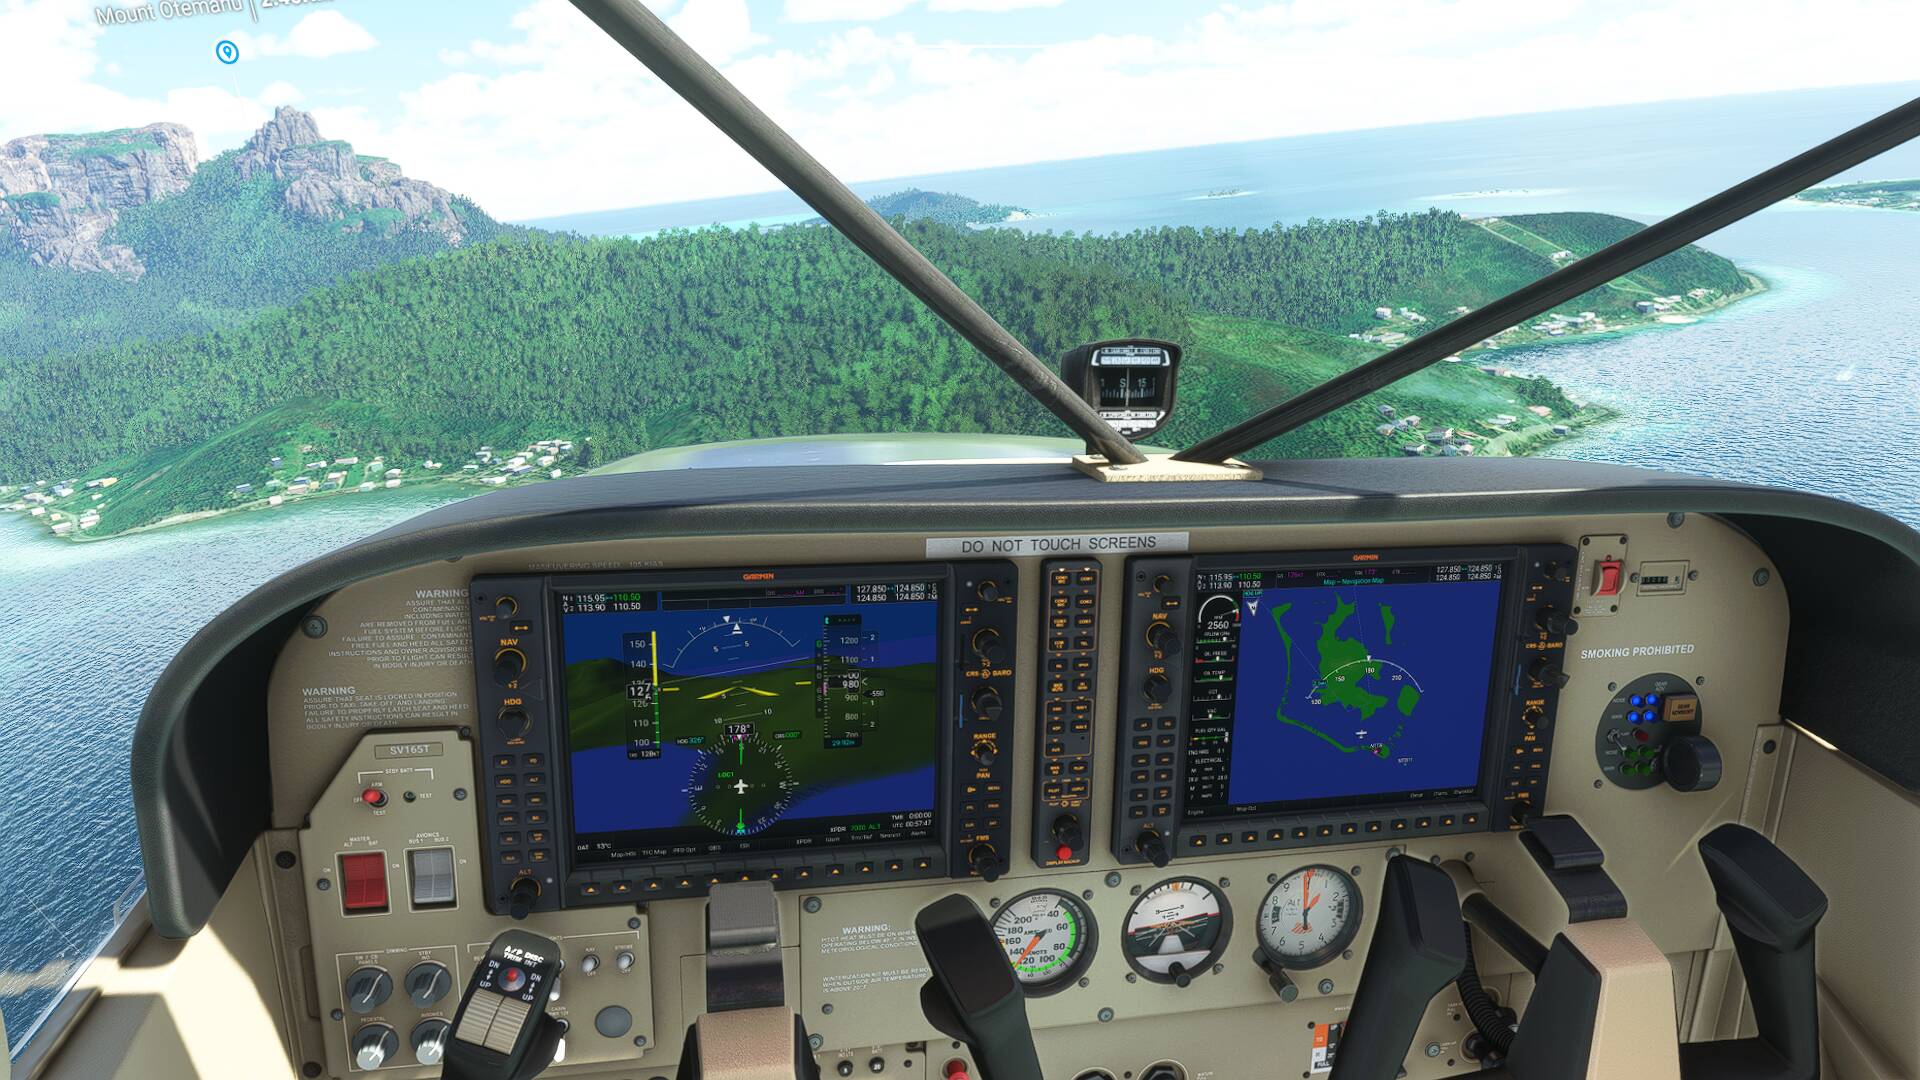 115 x 115 combat flight simulator 2